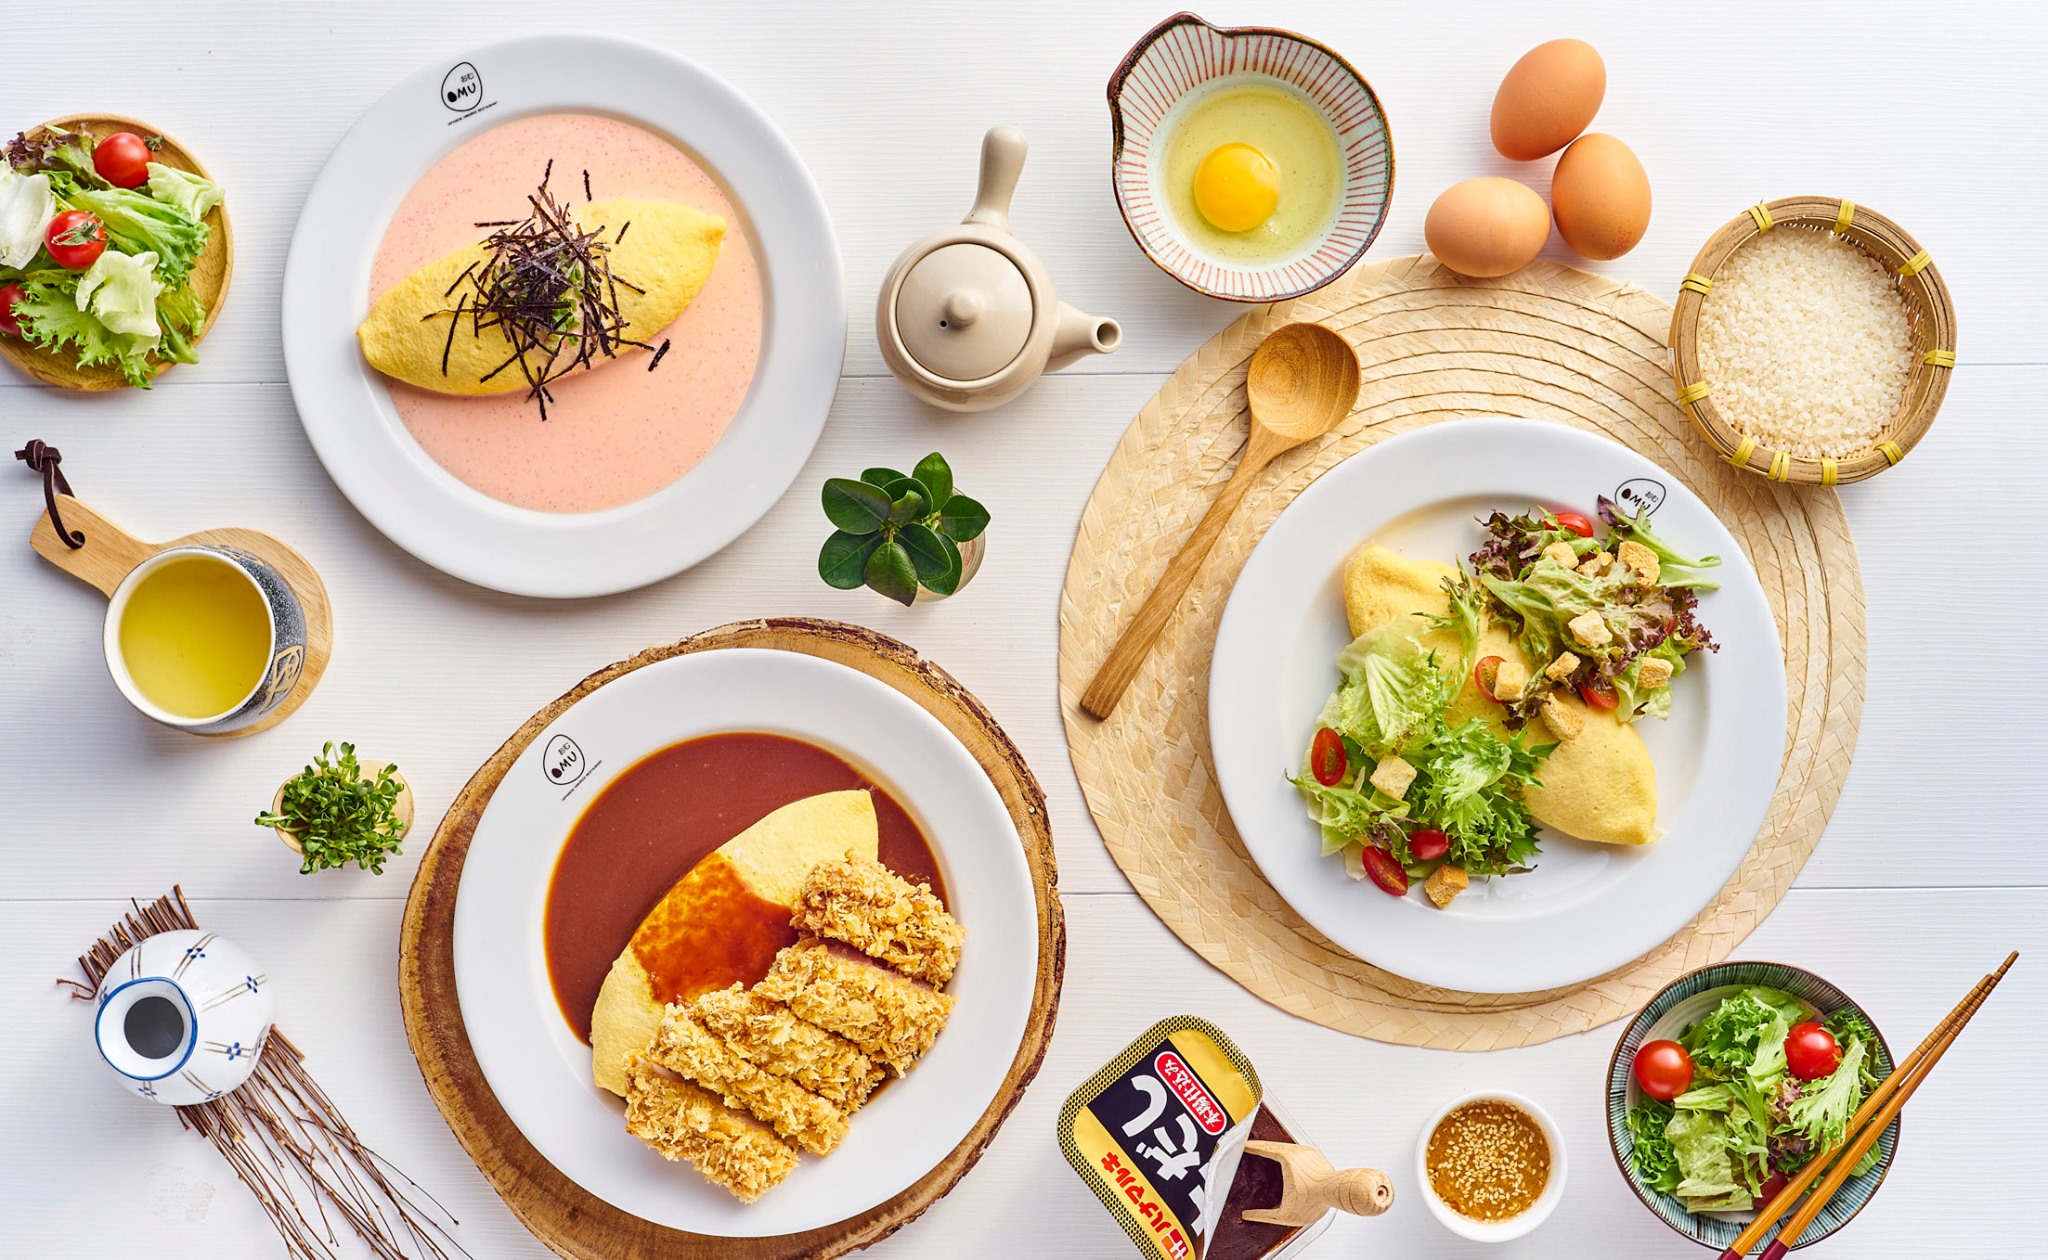 ไม่ต้องบินก็ฟินกับข้าวห่อไข่สไตล์ญี่ปุ่นได้ ด้วยบริการ OMU Delivery